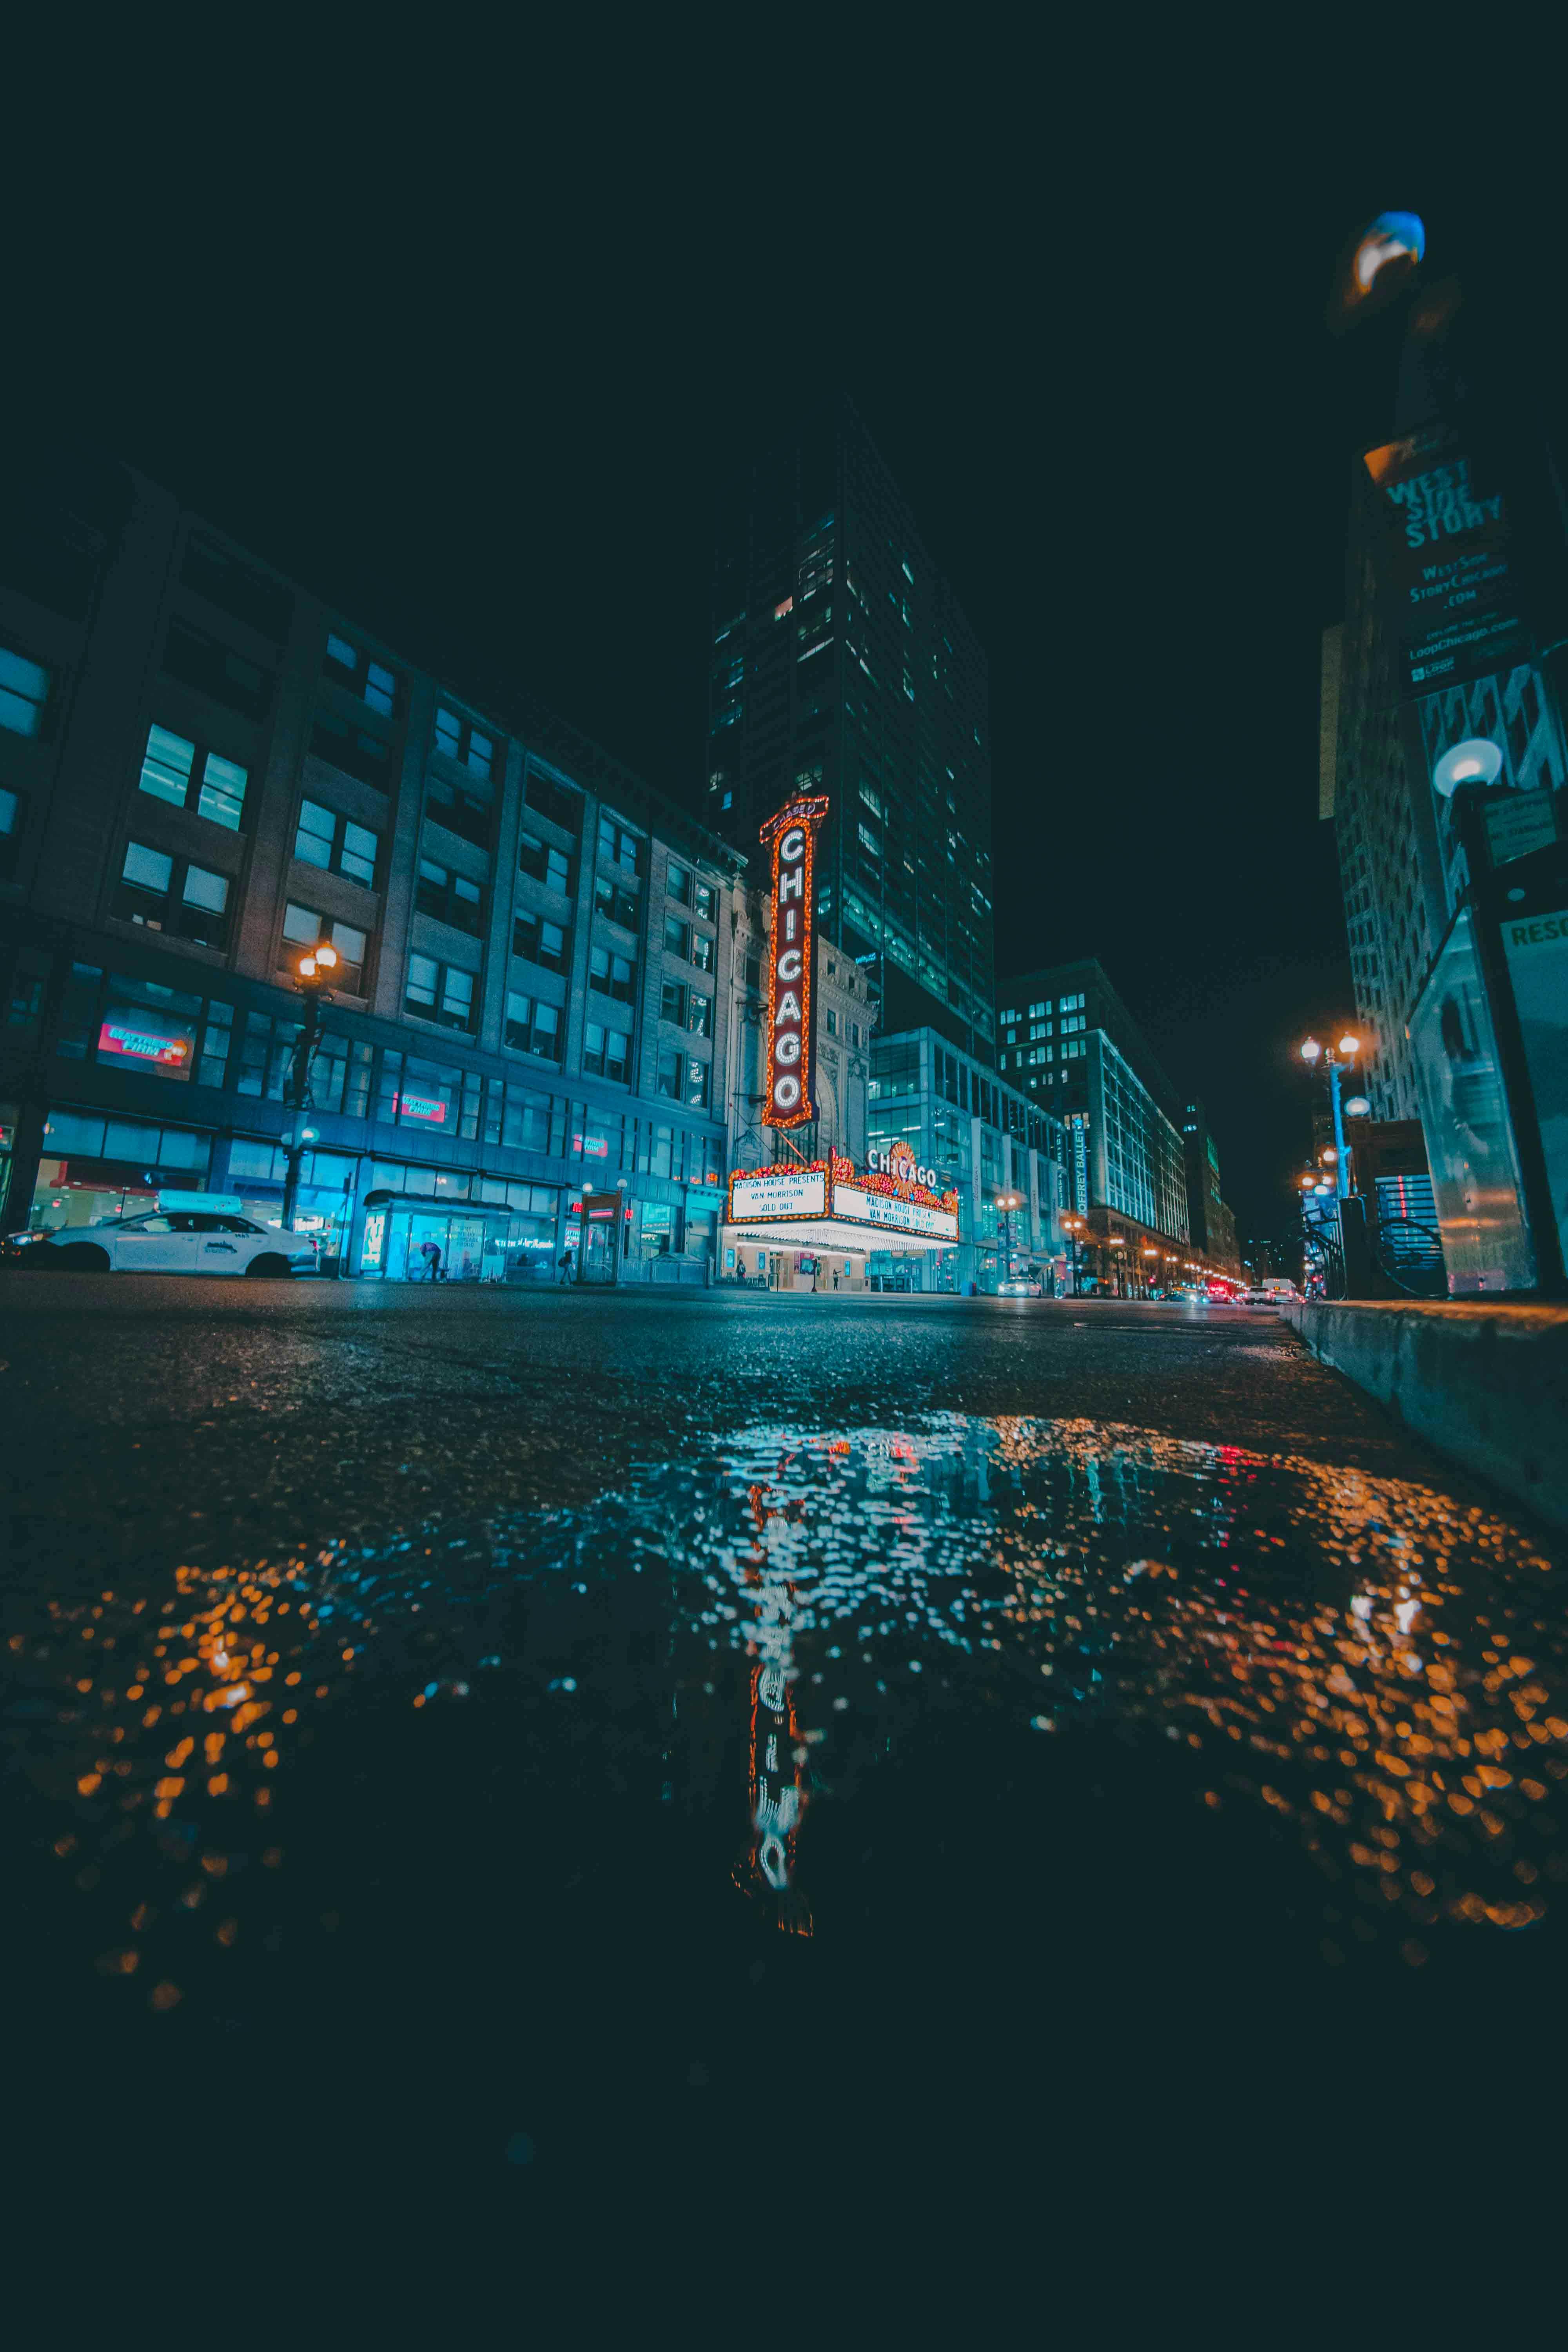 Bạn đã bao giờ thưởng thức vẻ đẹp rực rỡ của một tòa nhà cao ánh sáng ban đêm chưa? Hãy xem bức ảnh liên quan và đắm mình trong dòng chảy ánh sáng tuyệt đẹp của khu đô thị đêm.